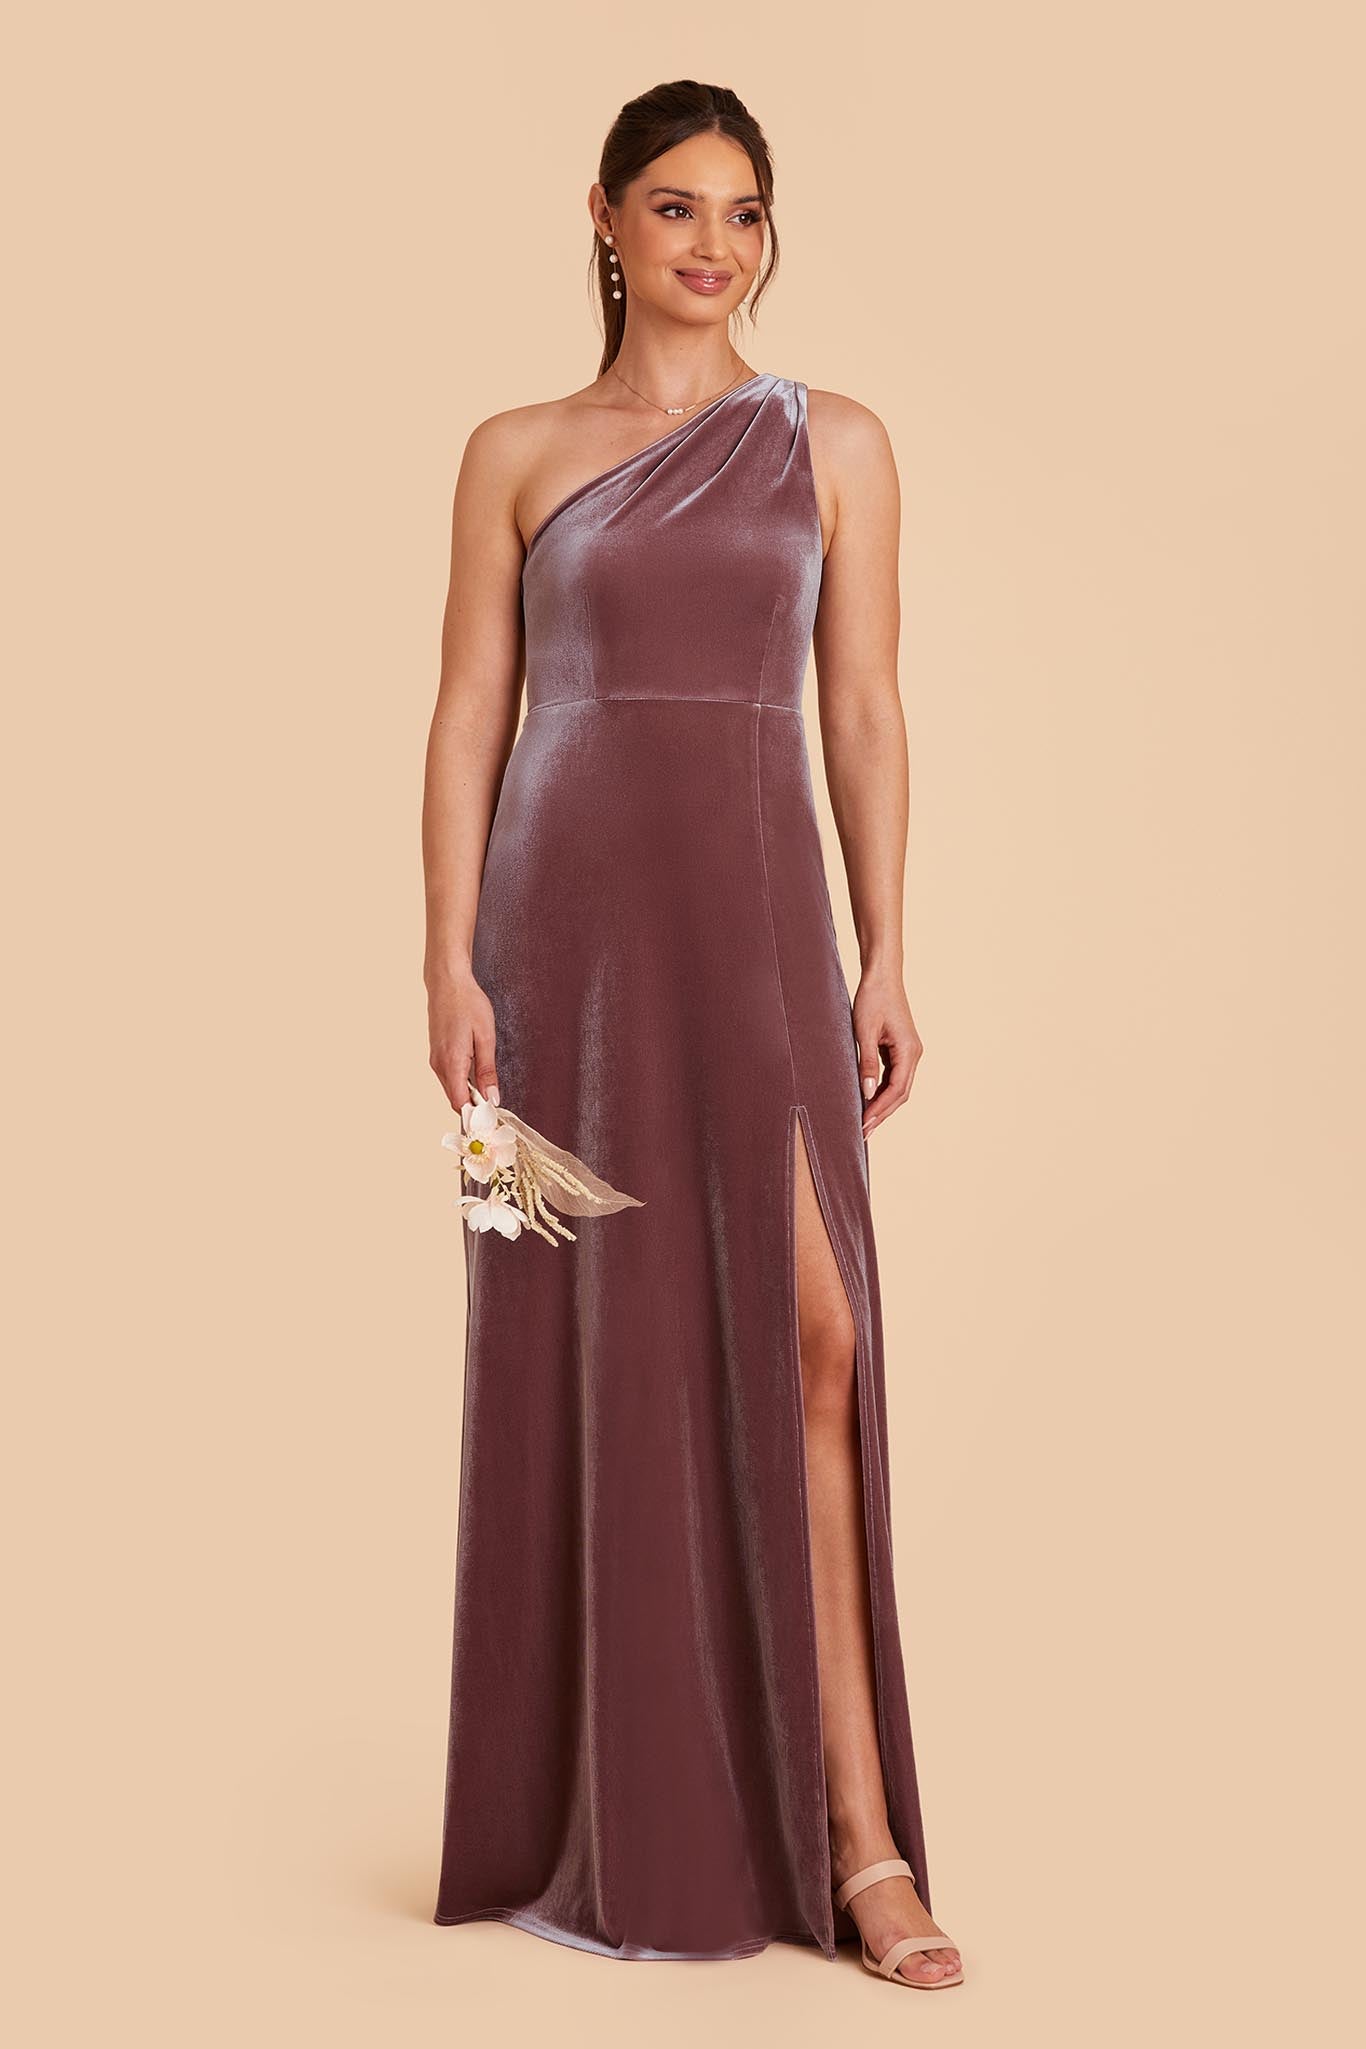 Desert Rose Kira Velvet Dress by Birdy Grey